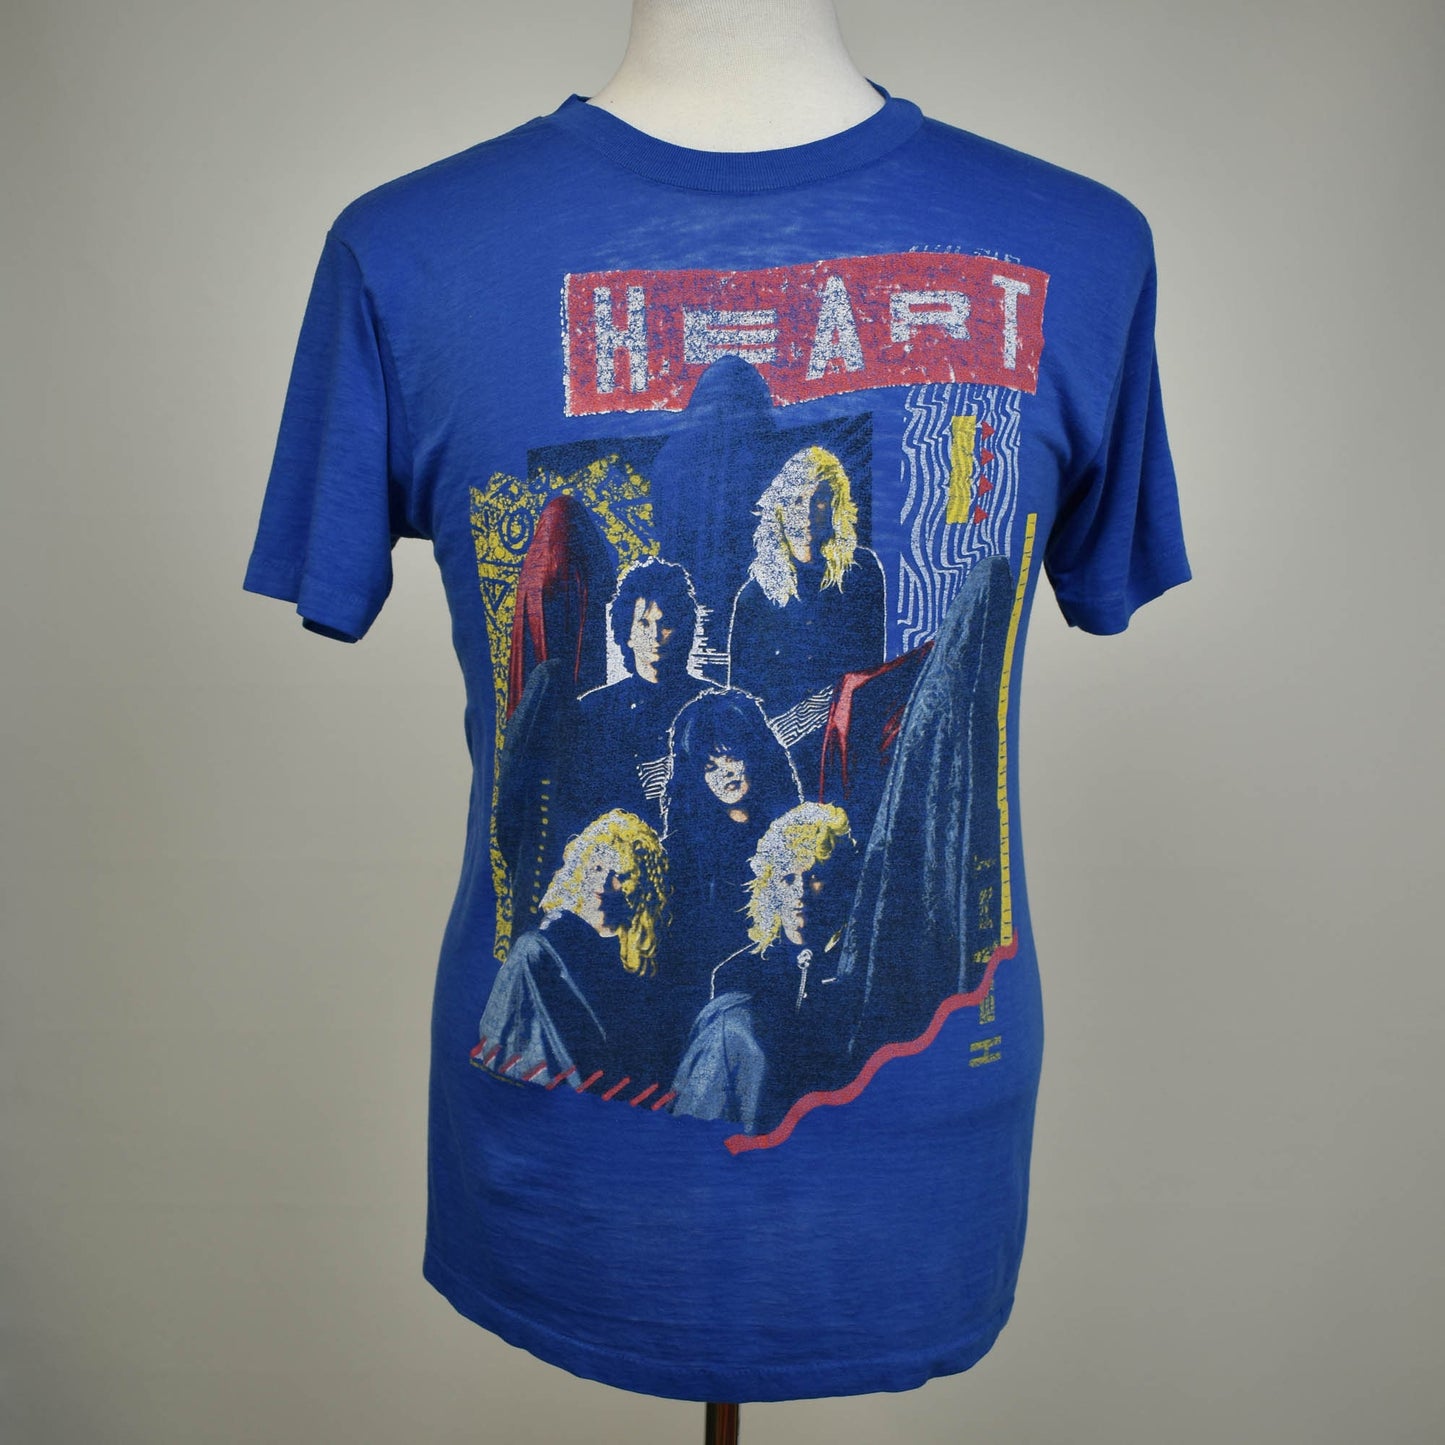 80s Paper Thin Heart Band T-shirt - Single Stitch - Fits Like Medium